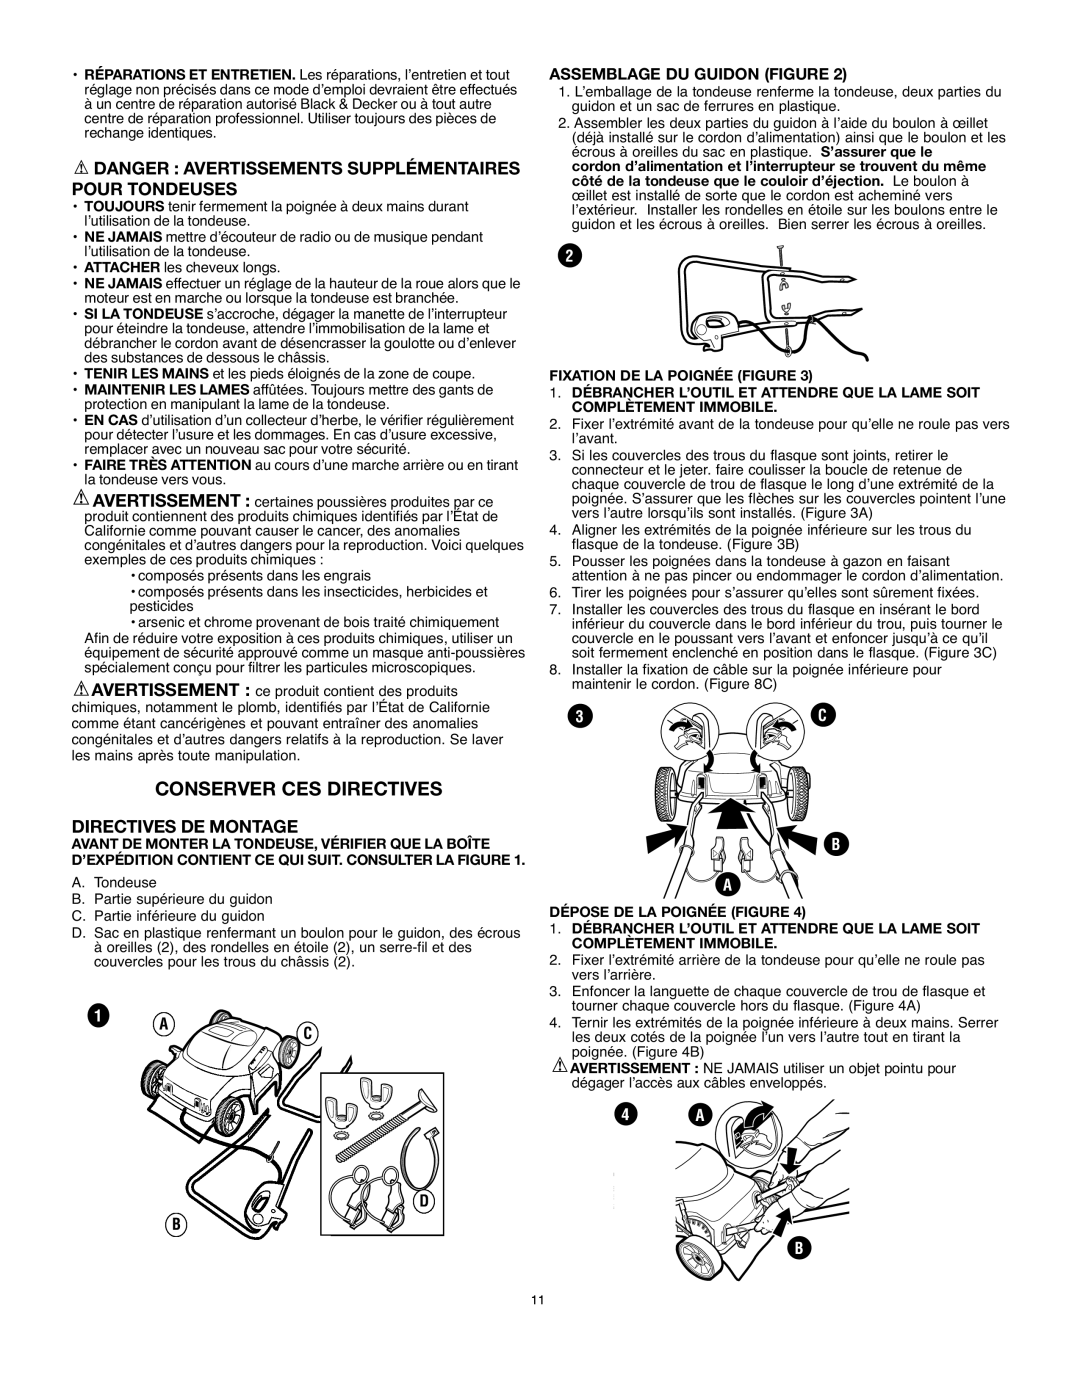 Black & Decker LM175 instruction manual Conserver Ces Directives, Directives De Montage, Assemblage Du Guidon Figure, 4 A B 